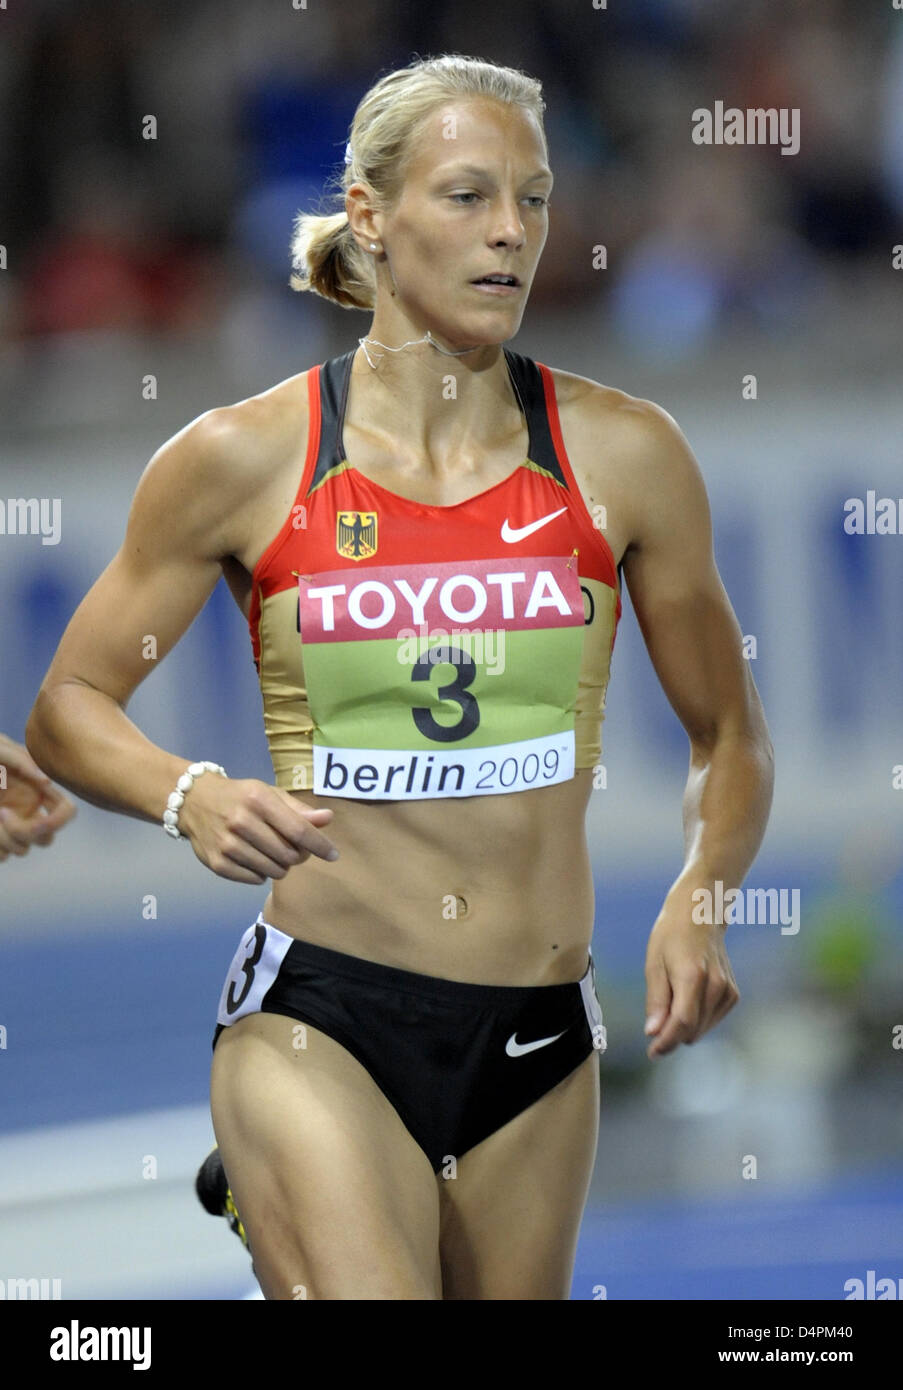 Alemán Jennifer Oeser se muestra en acción durante la final de 800m de competición del heptathlon en el 12º Campeonato del Mundo IAAF de Atletismo en Berlín, Alemania, el 16 de agosto de 2009. Oeser ganó la medalla de plata. Foto: Aníbal Foto de stock